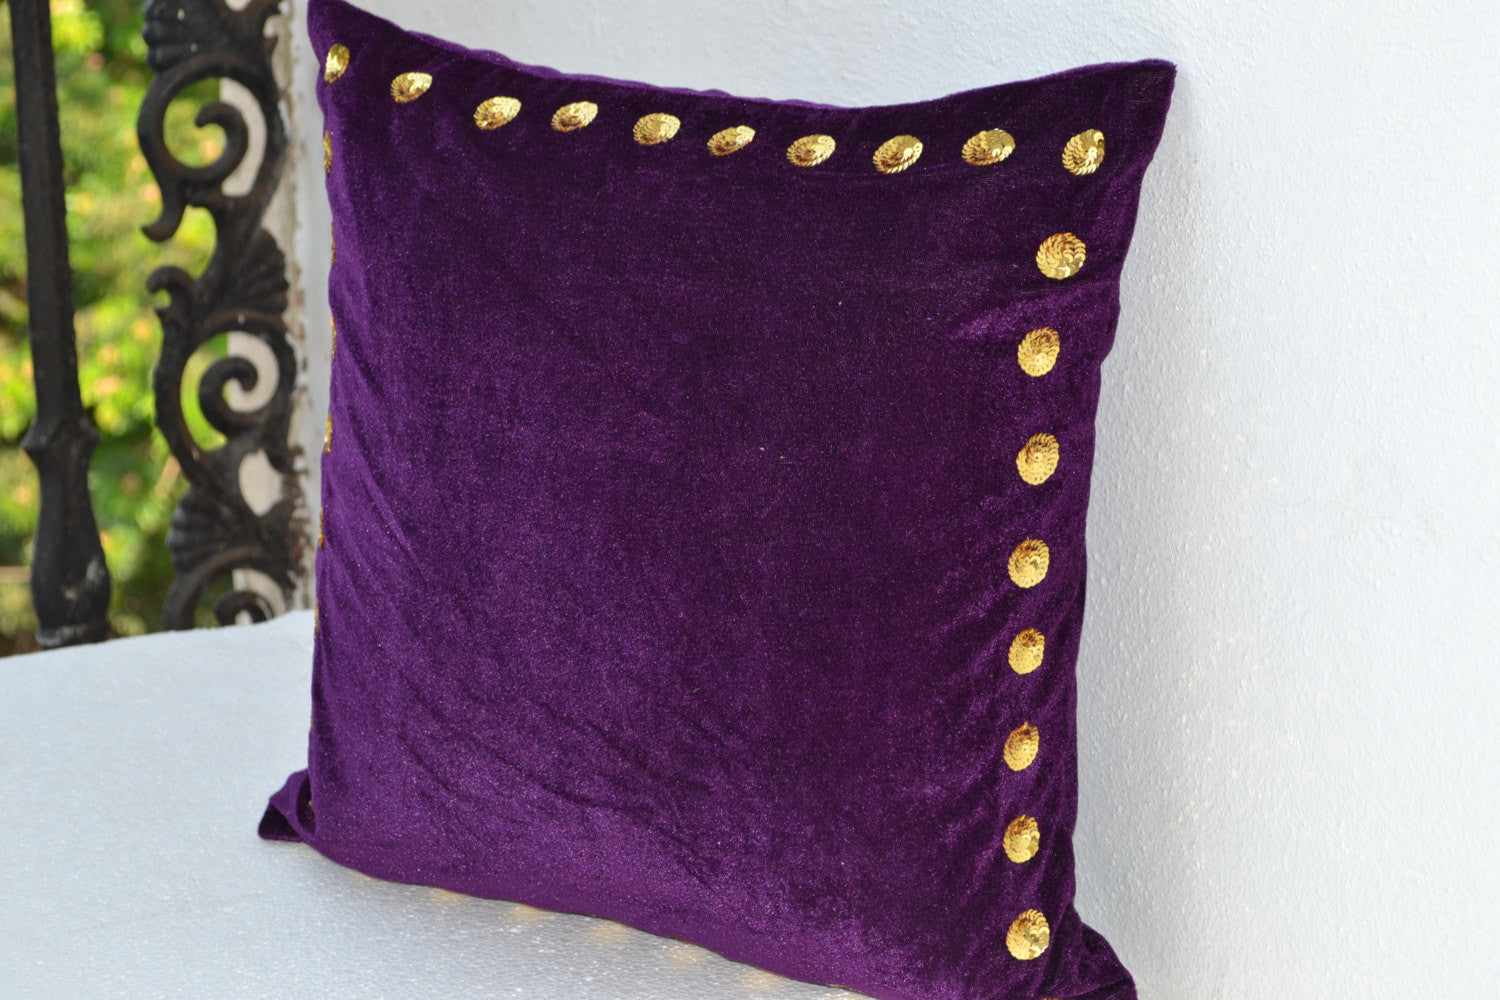 Handmade purple throw pillow cover in velvet